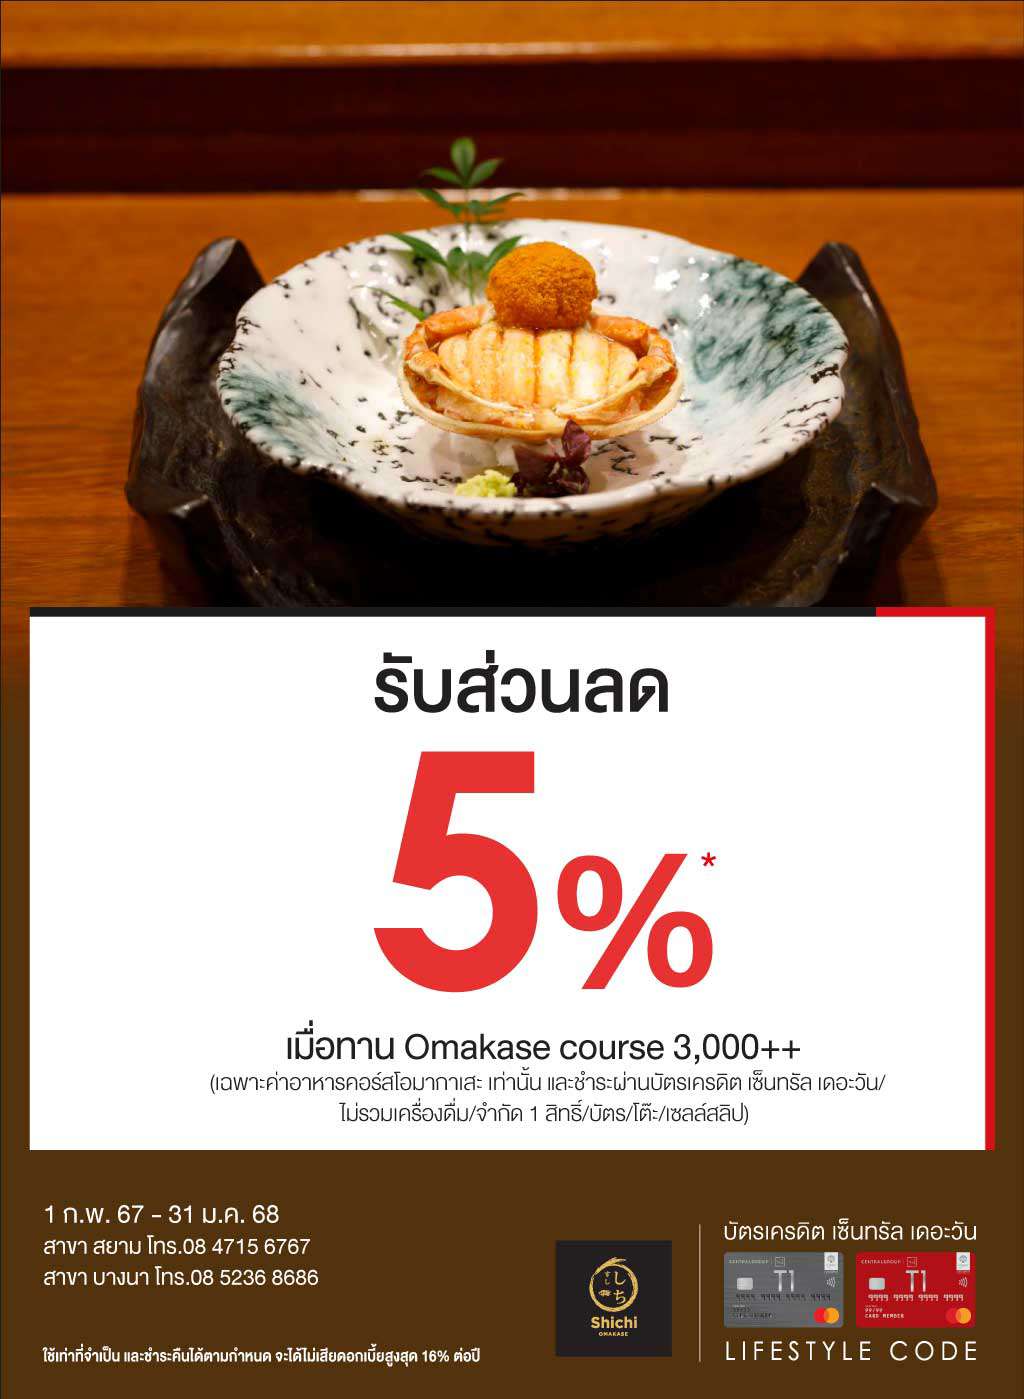 ส่วนลด 5%* ที่ Shichi Japanese Restaurant | บัตรเครดิต | สมัครบัตรเครดิต | สมัครบัตรเครดิตออนไลน์ | สิทธิประโยชน์บัตรเครดิต | สมัครสินเชื่อออนไลน์ | บัตรเครดิต ผ่อน 0% | บัตรเครดิต ใช้ต่างประเทศ | บัตรเครดิต ท่องเที่ยว | บัตรเครดิตเติมน้ำมัน